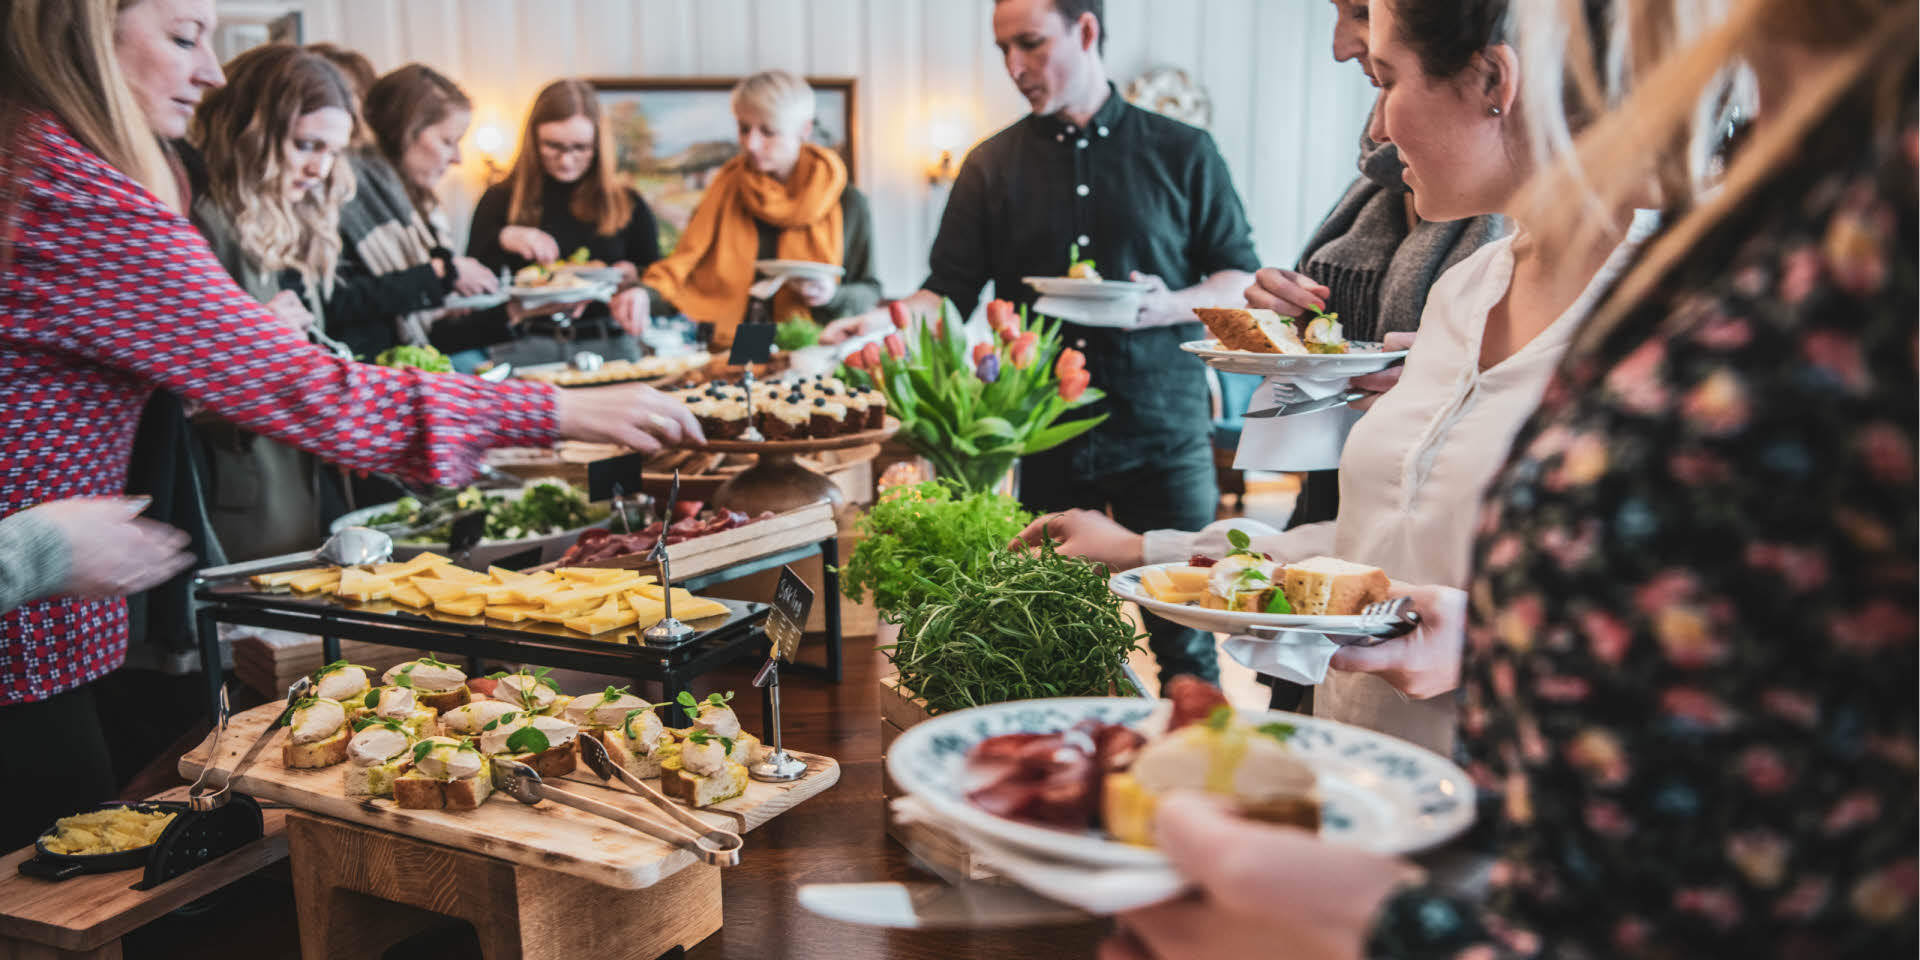 Männer und Frauen bedienen sich an einem Buffet mit lokalen Tapasgerichten mit Salaten, Käse, Fisch und Wurstaufschnitt